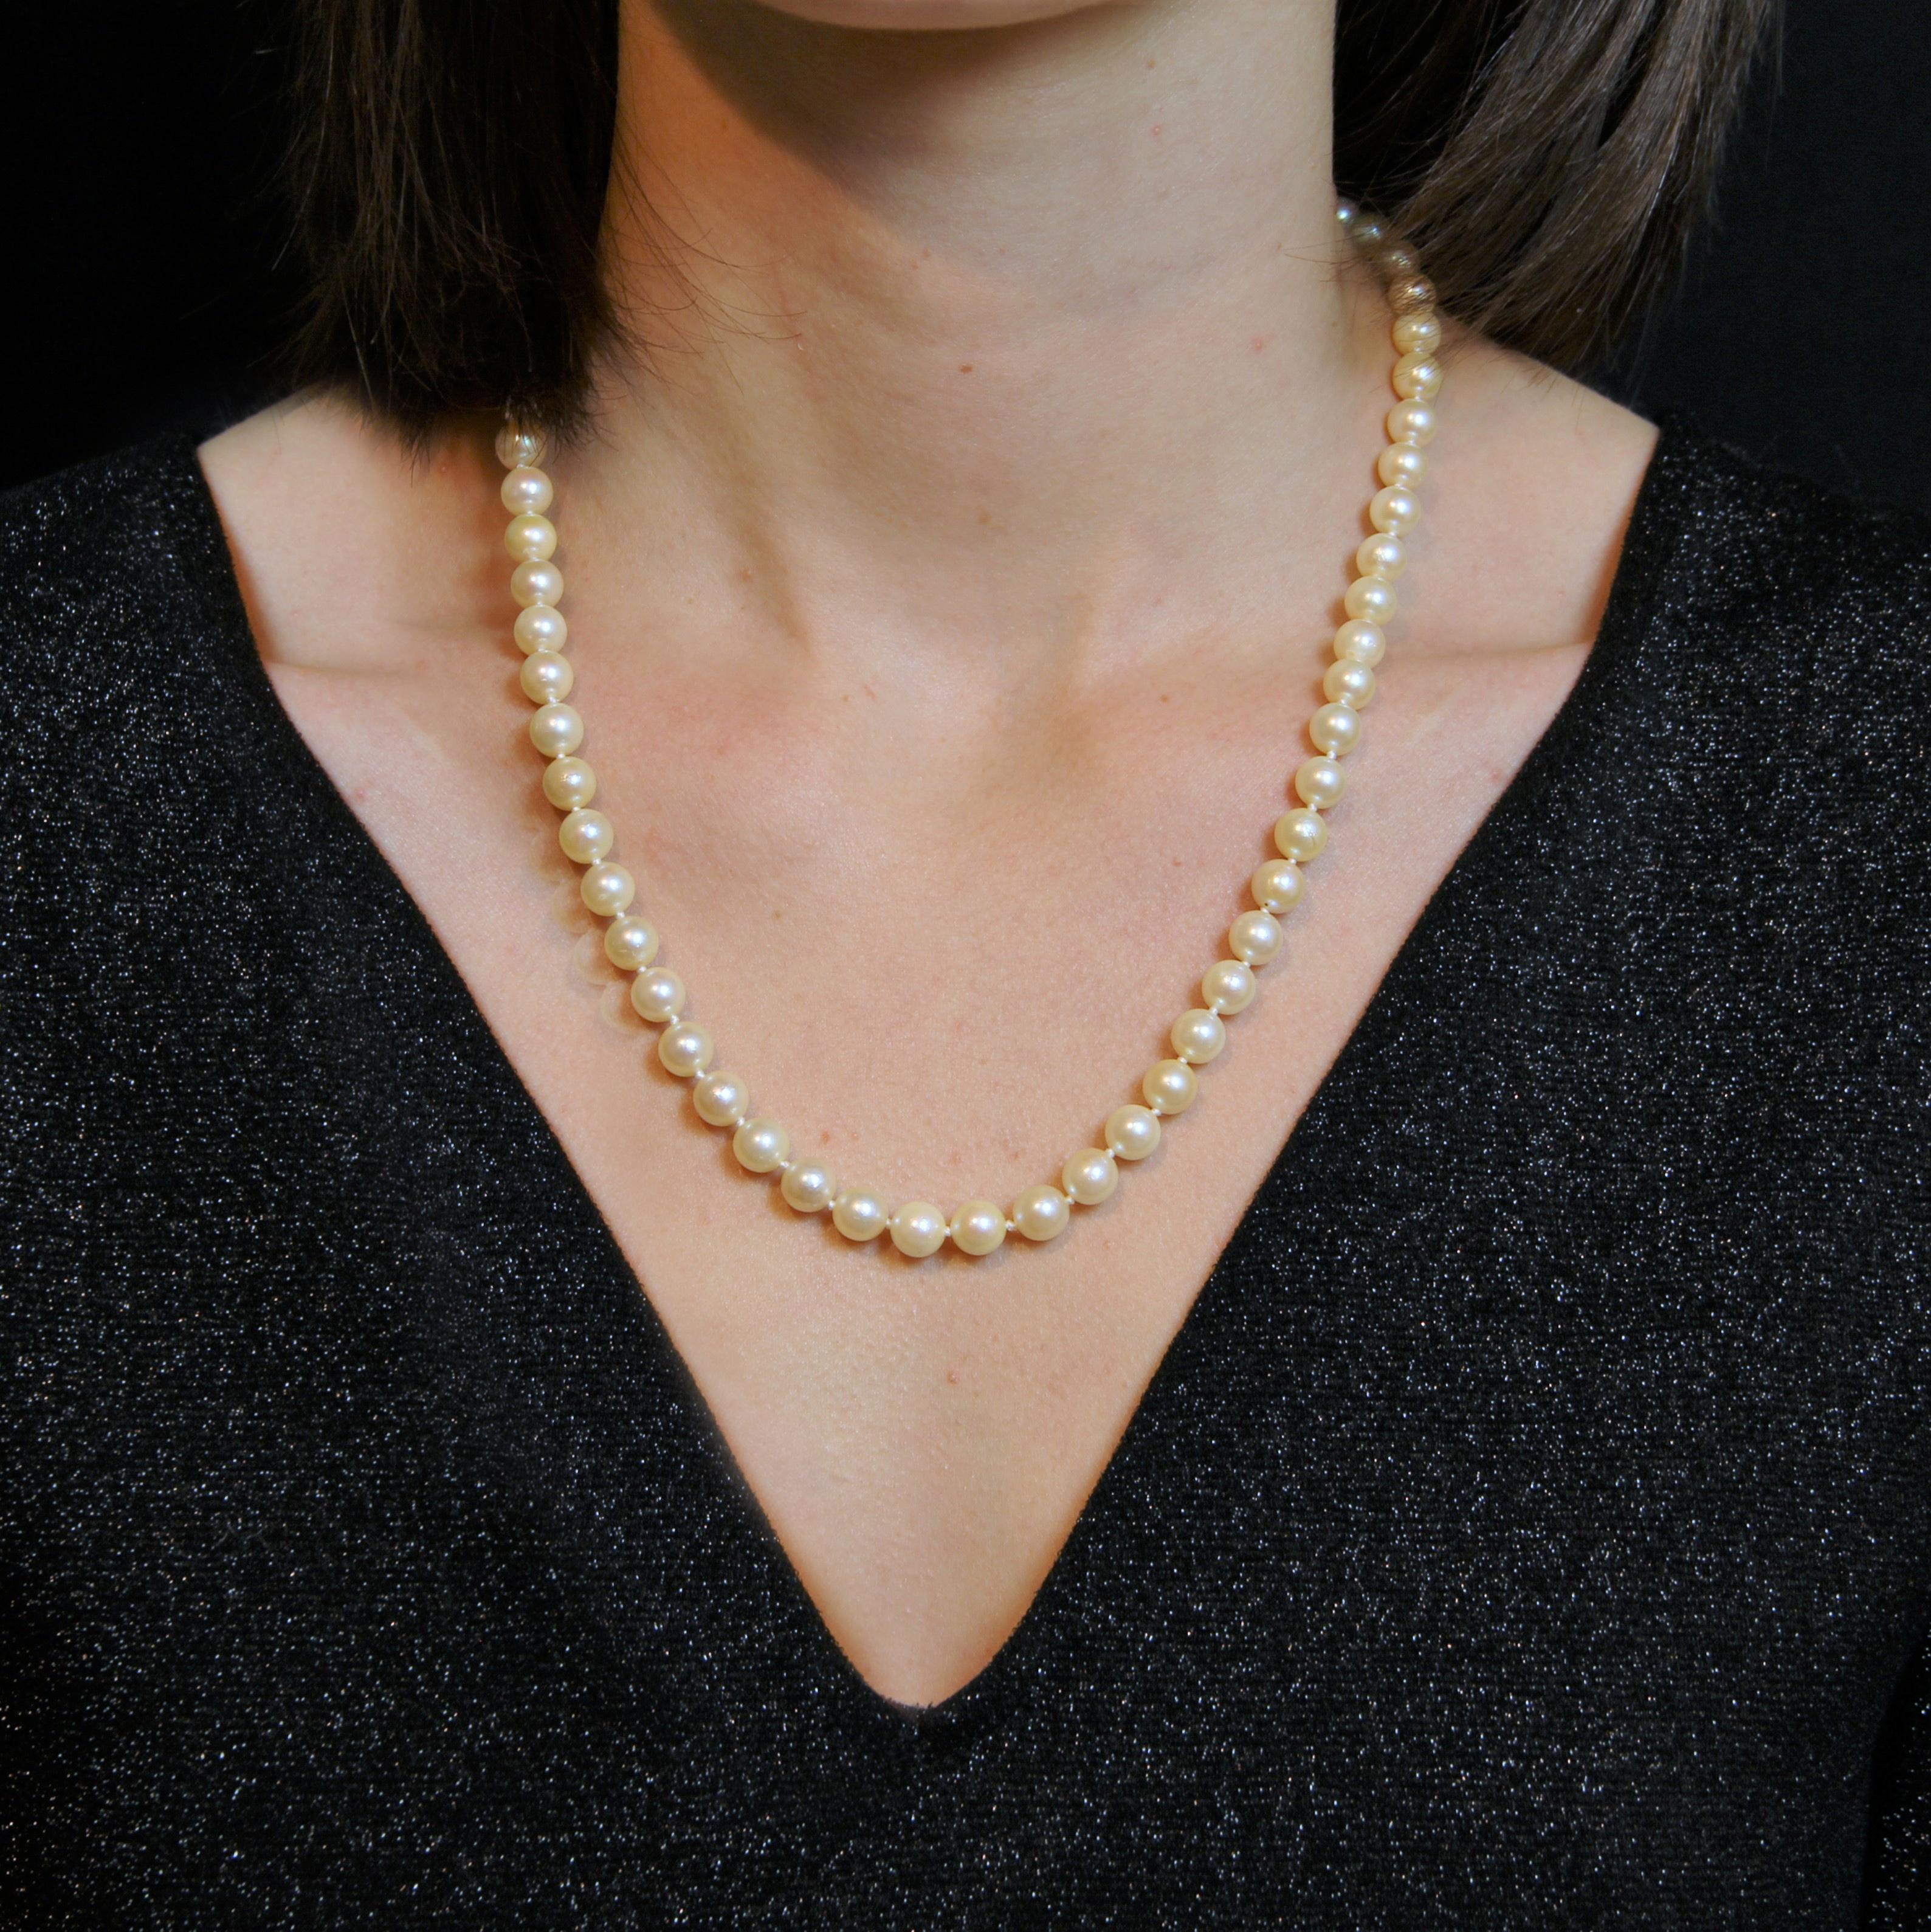 Halskette aus einer Reihe von Zuchtperlen fast gleicher Größe. Der Verschluss ist am Ende in der Perle versteckt. Die Sicherheitskette mit Federring sichert die Schließe.
Durchmesser der Perlen: 6,5/7 bis 7,5/8 mm.
Länge: ca. 53,5 cm.
Gesamtgewicht